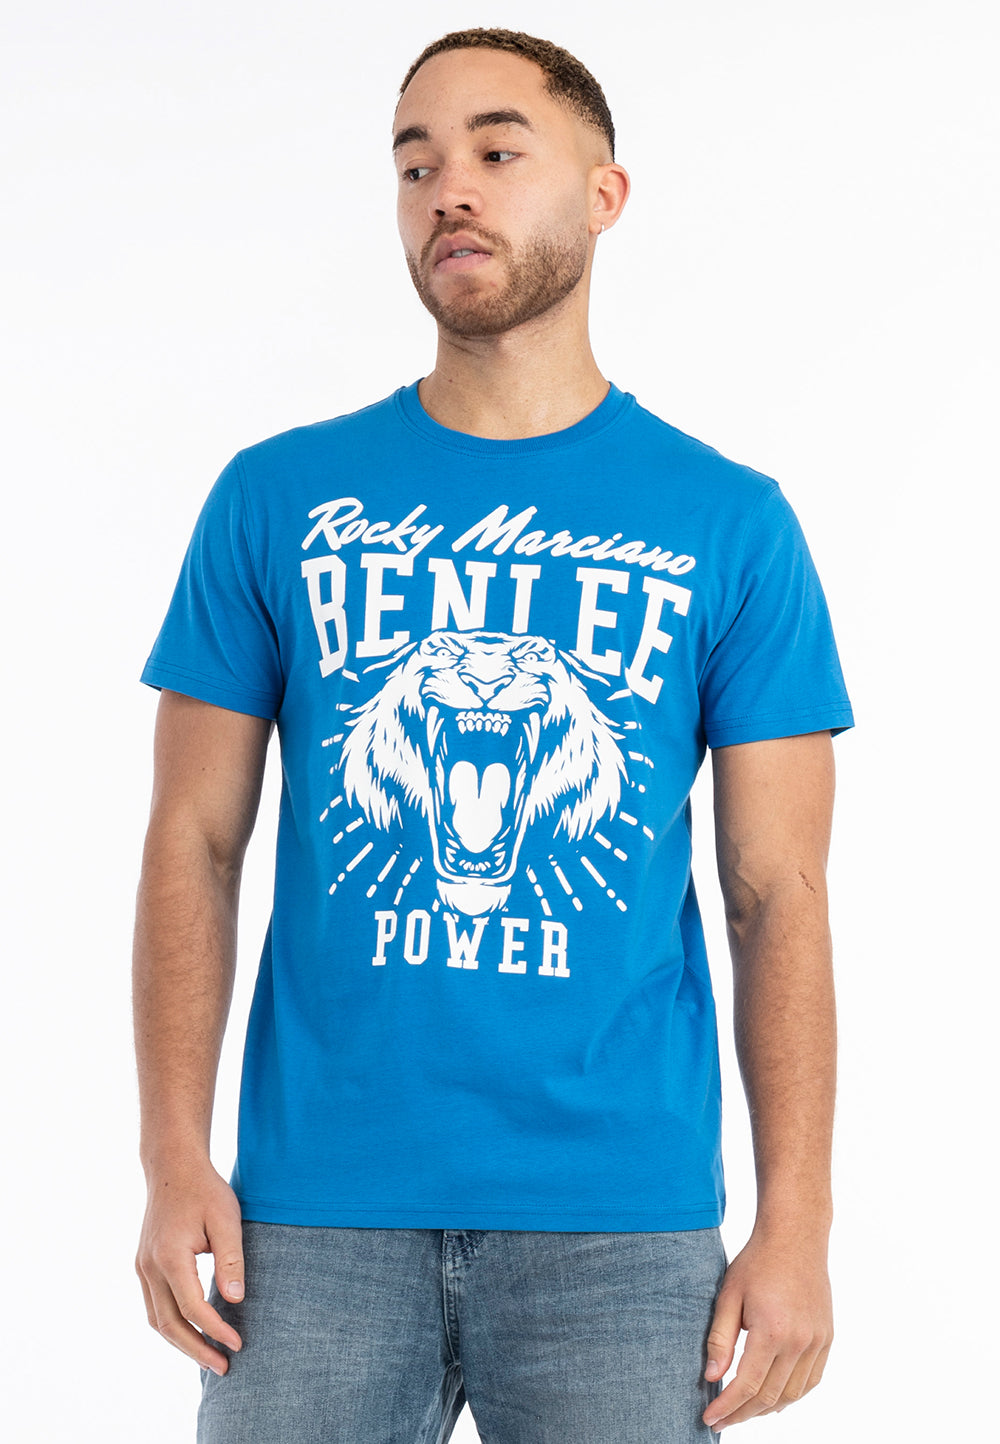 BENLEE 190752 Tigerpower T-Shirt - Blau